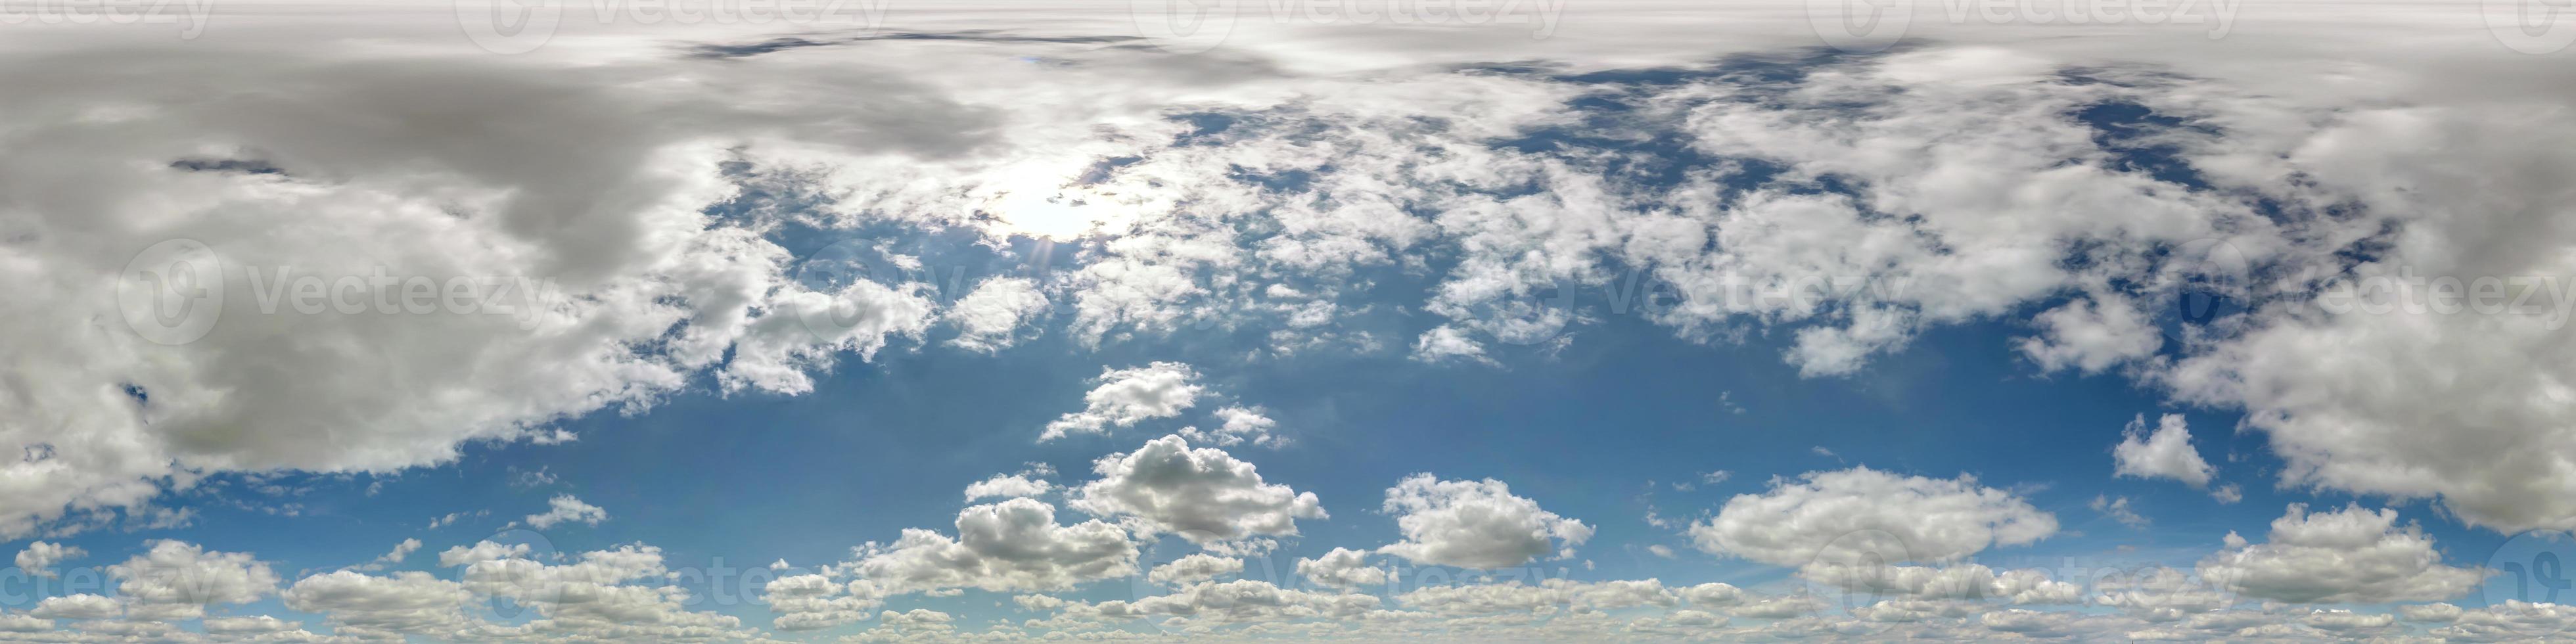 céu azul hdr 360 panorama com lindas nuvens brancas em projeção perfeita  com zênite para uso em gráficos 3d ou desenvolvimento de jogos como cúpula  do céu ou editar tiro de drone